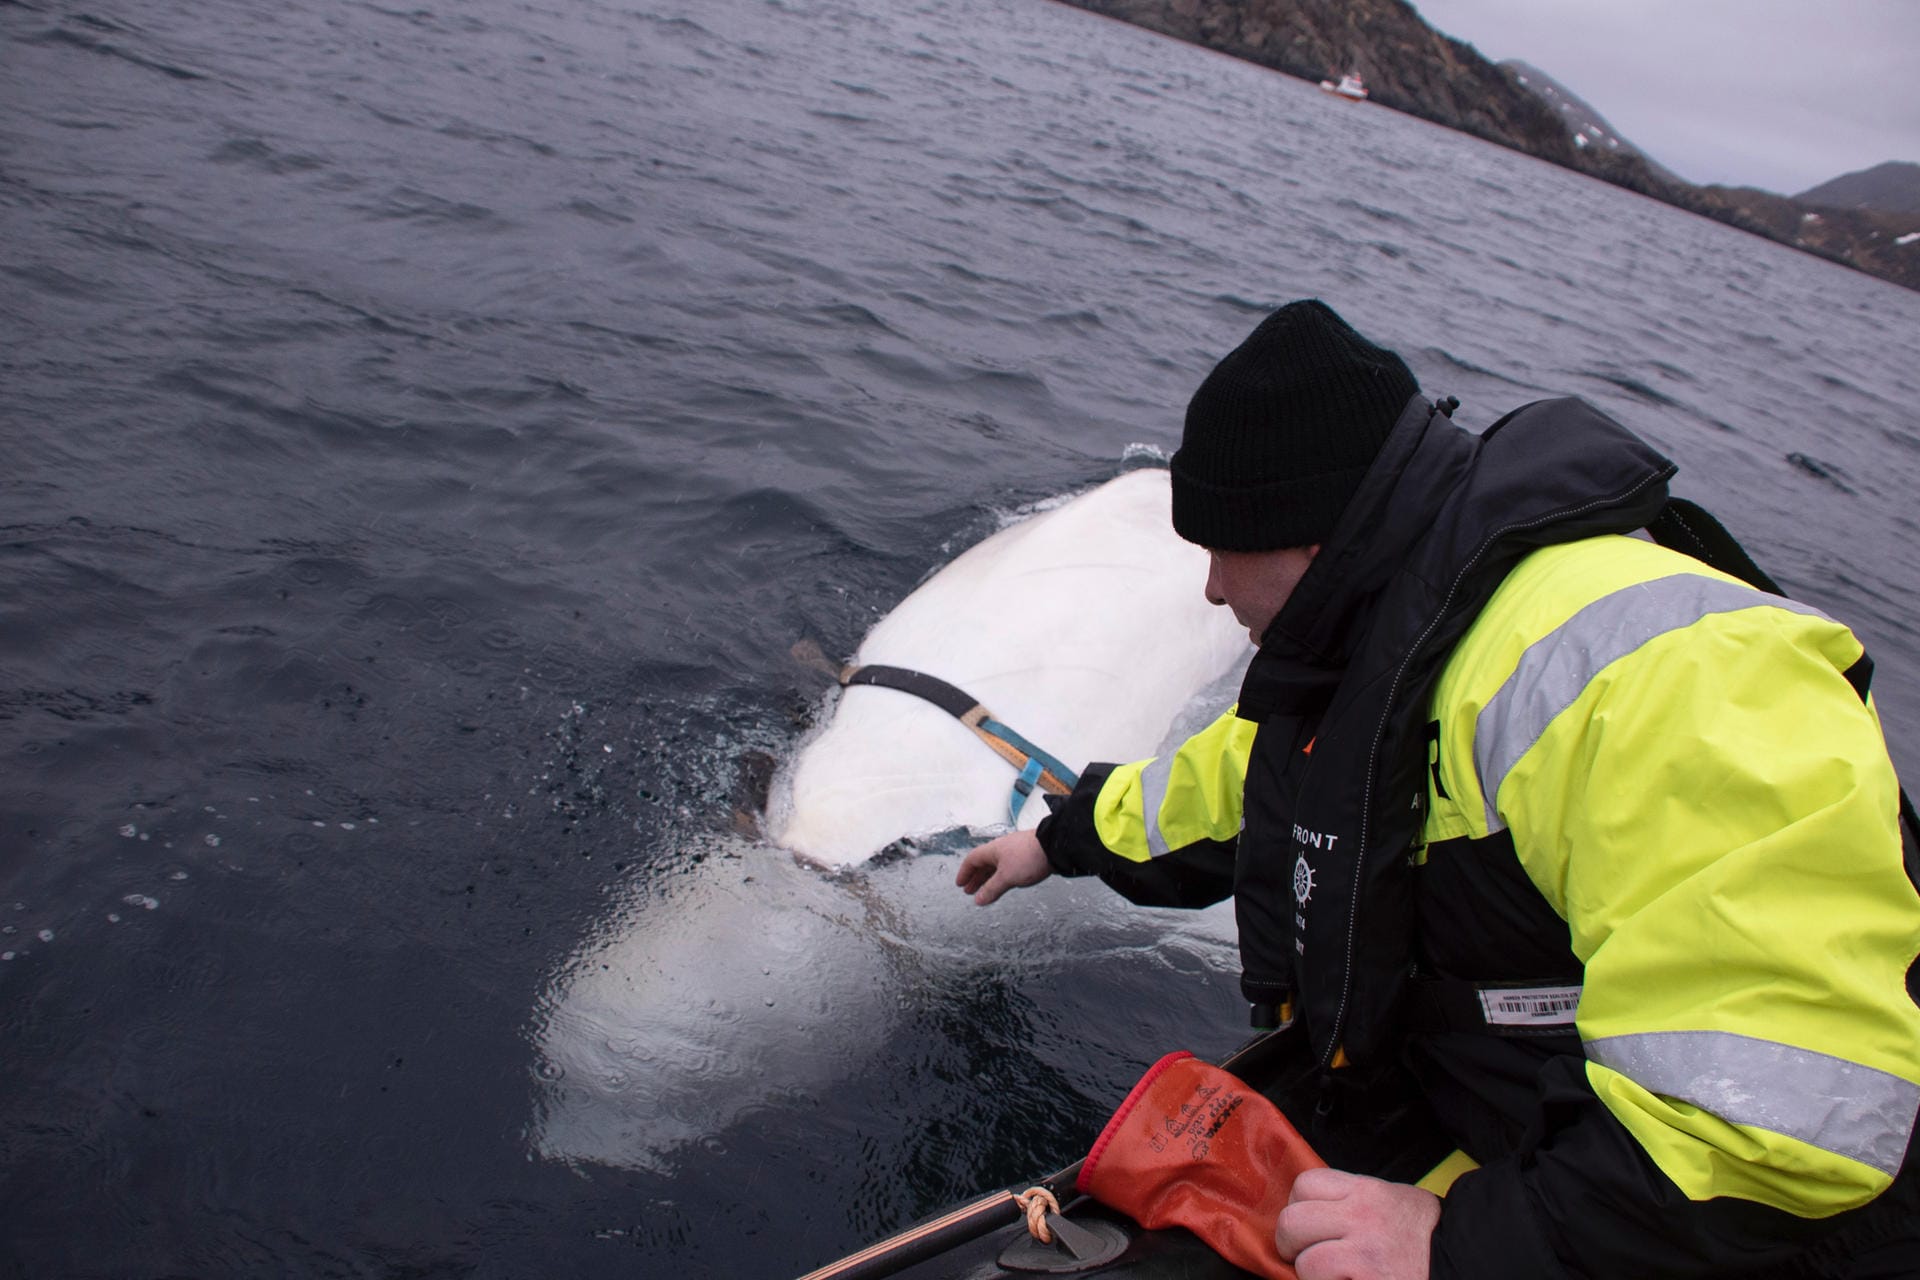 Norwegen: Der Fischer Joergen Ree Wiig nähert sich dem Beluga-Wal und untersucht, was an seinem Körper befestigt ist.